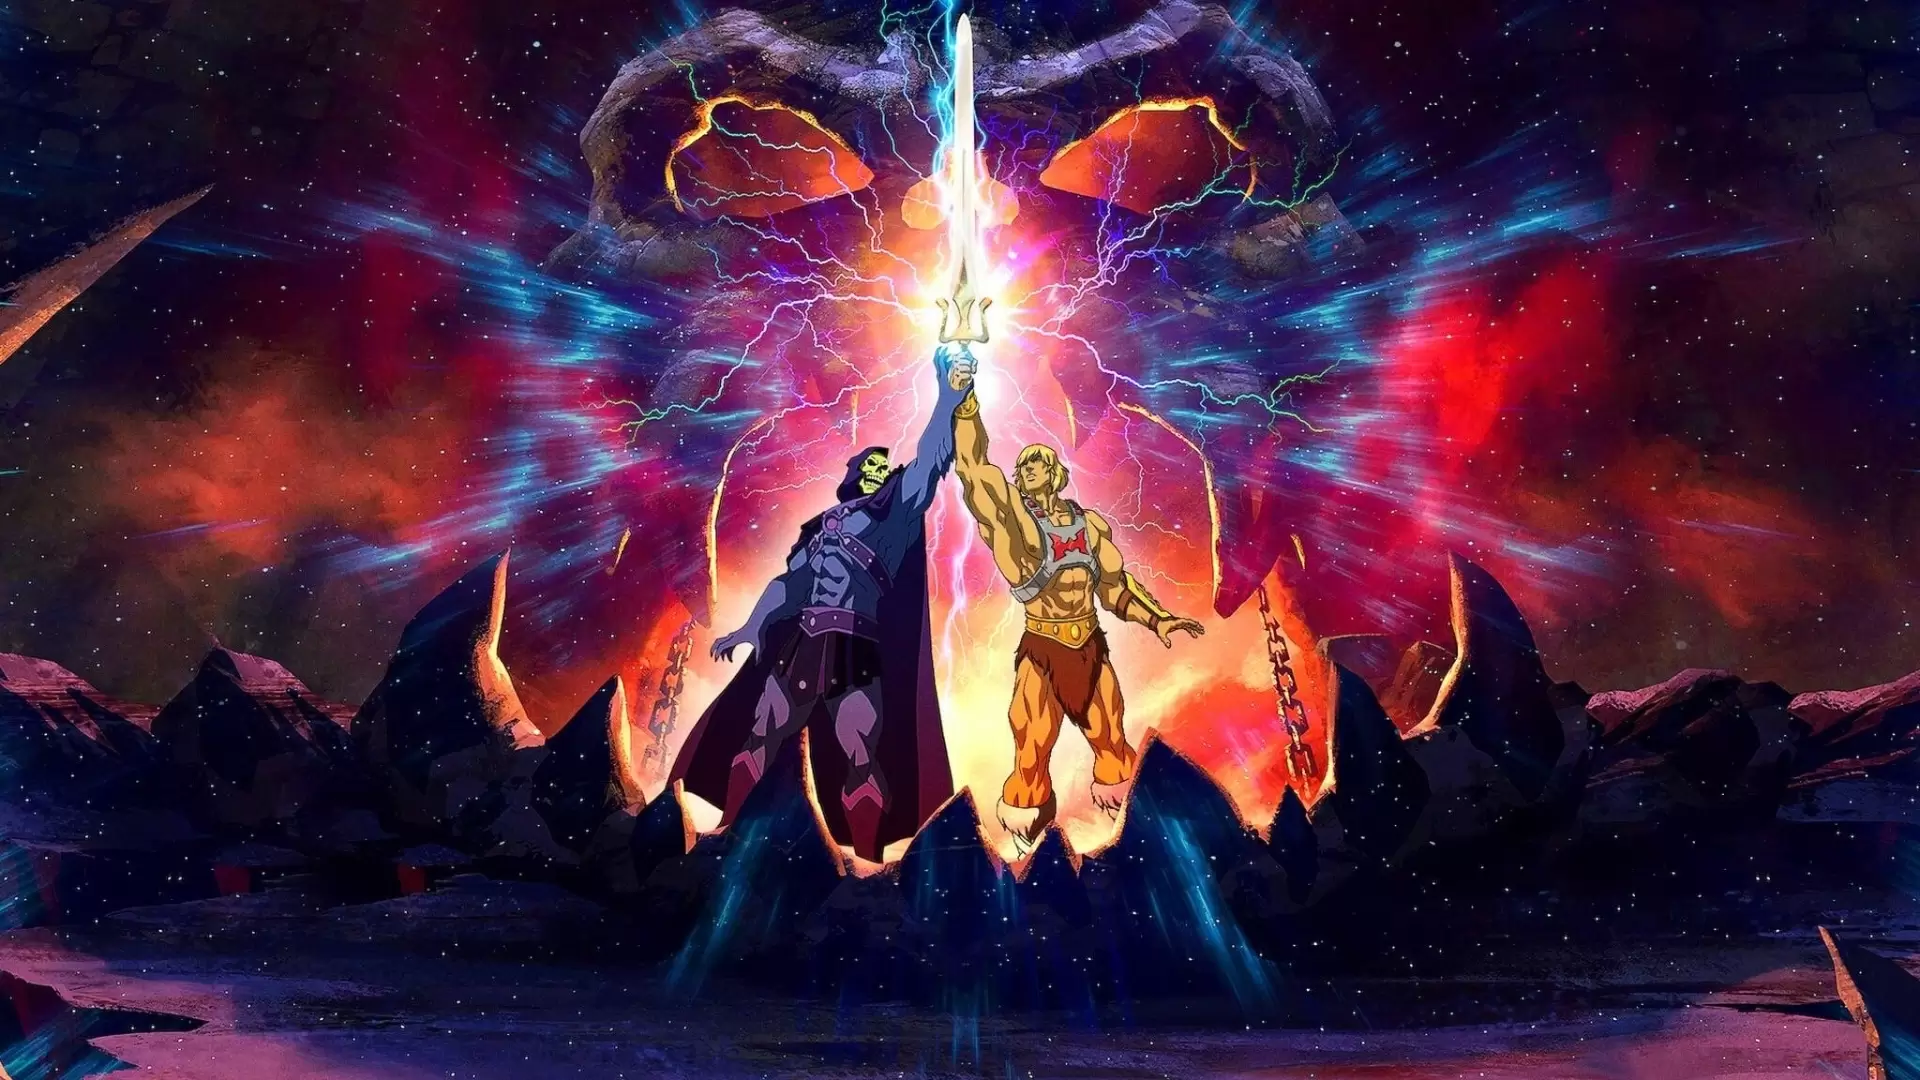 دانلود انیمیشن Masters of the Universe: Revelation 2021 با زیرنویس فارسی و تماشای آنلاین